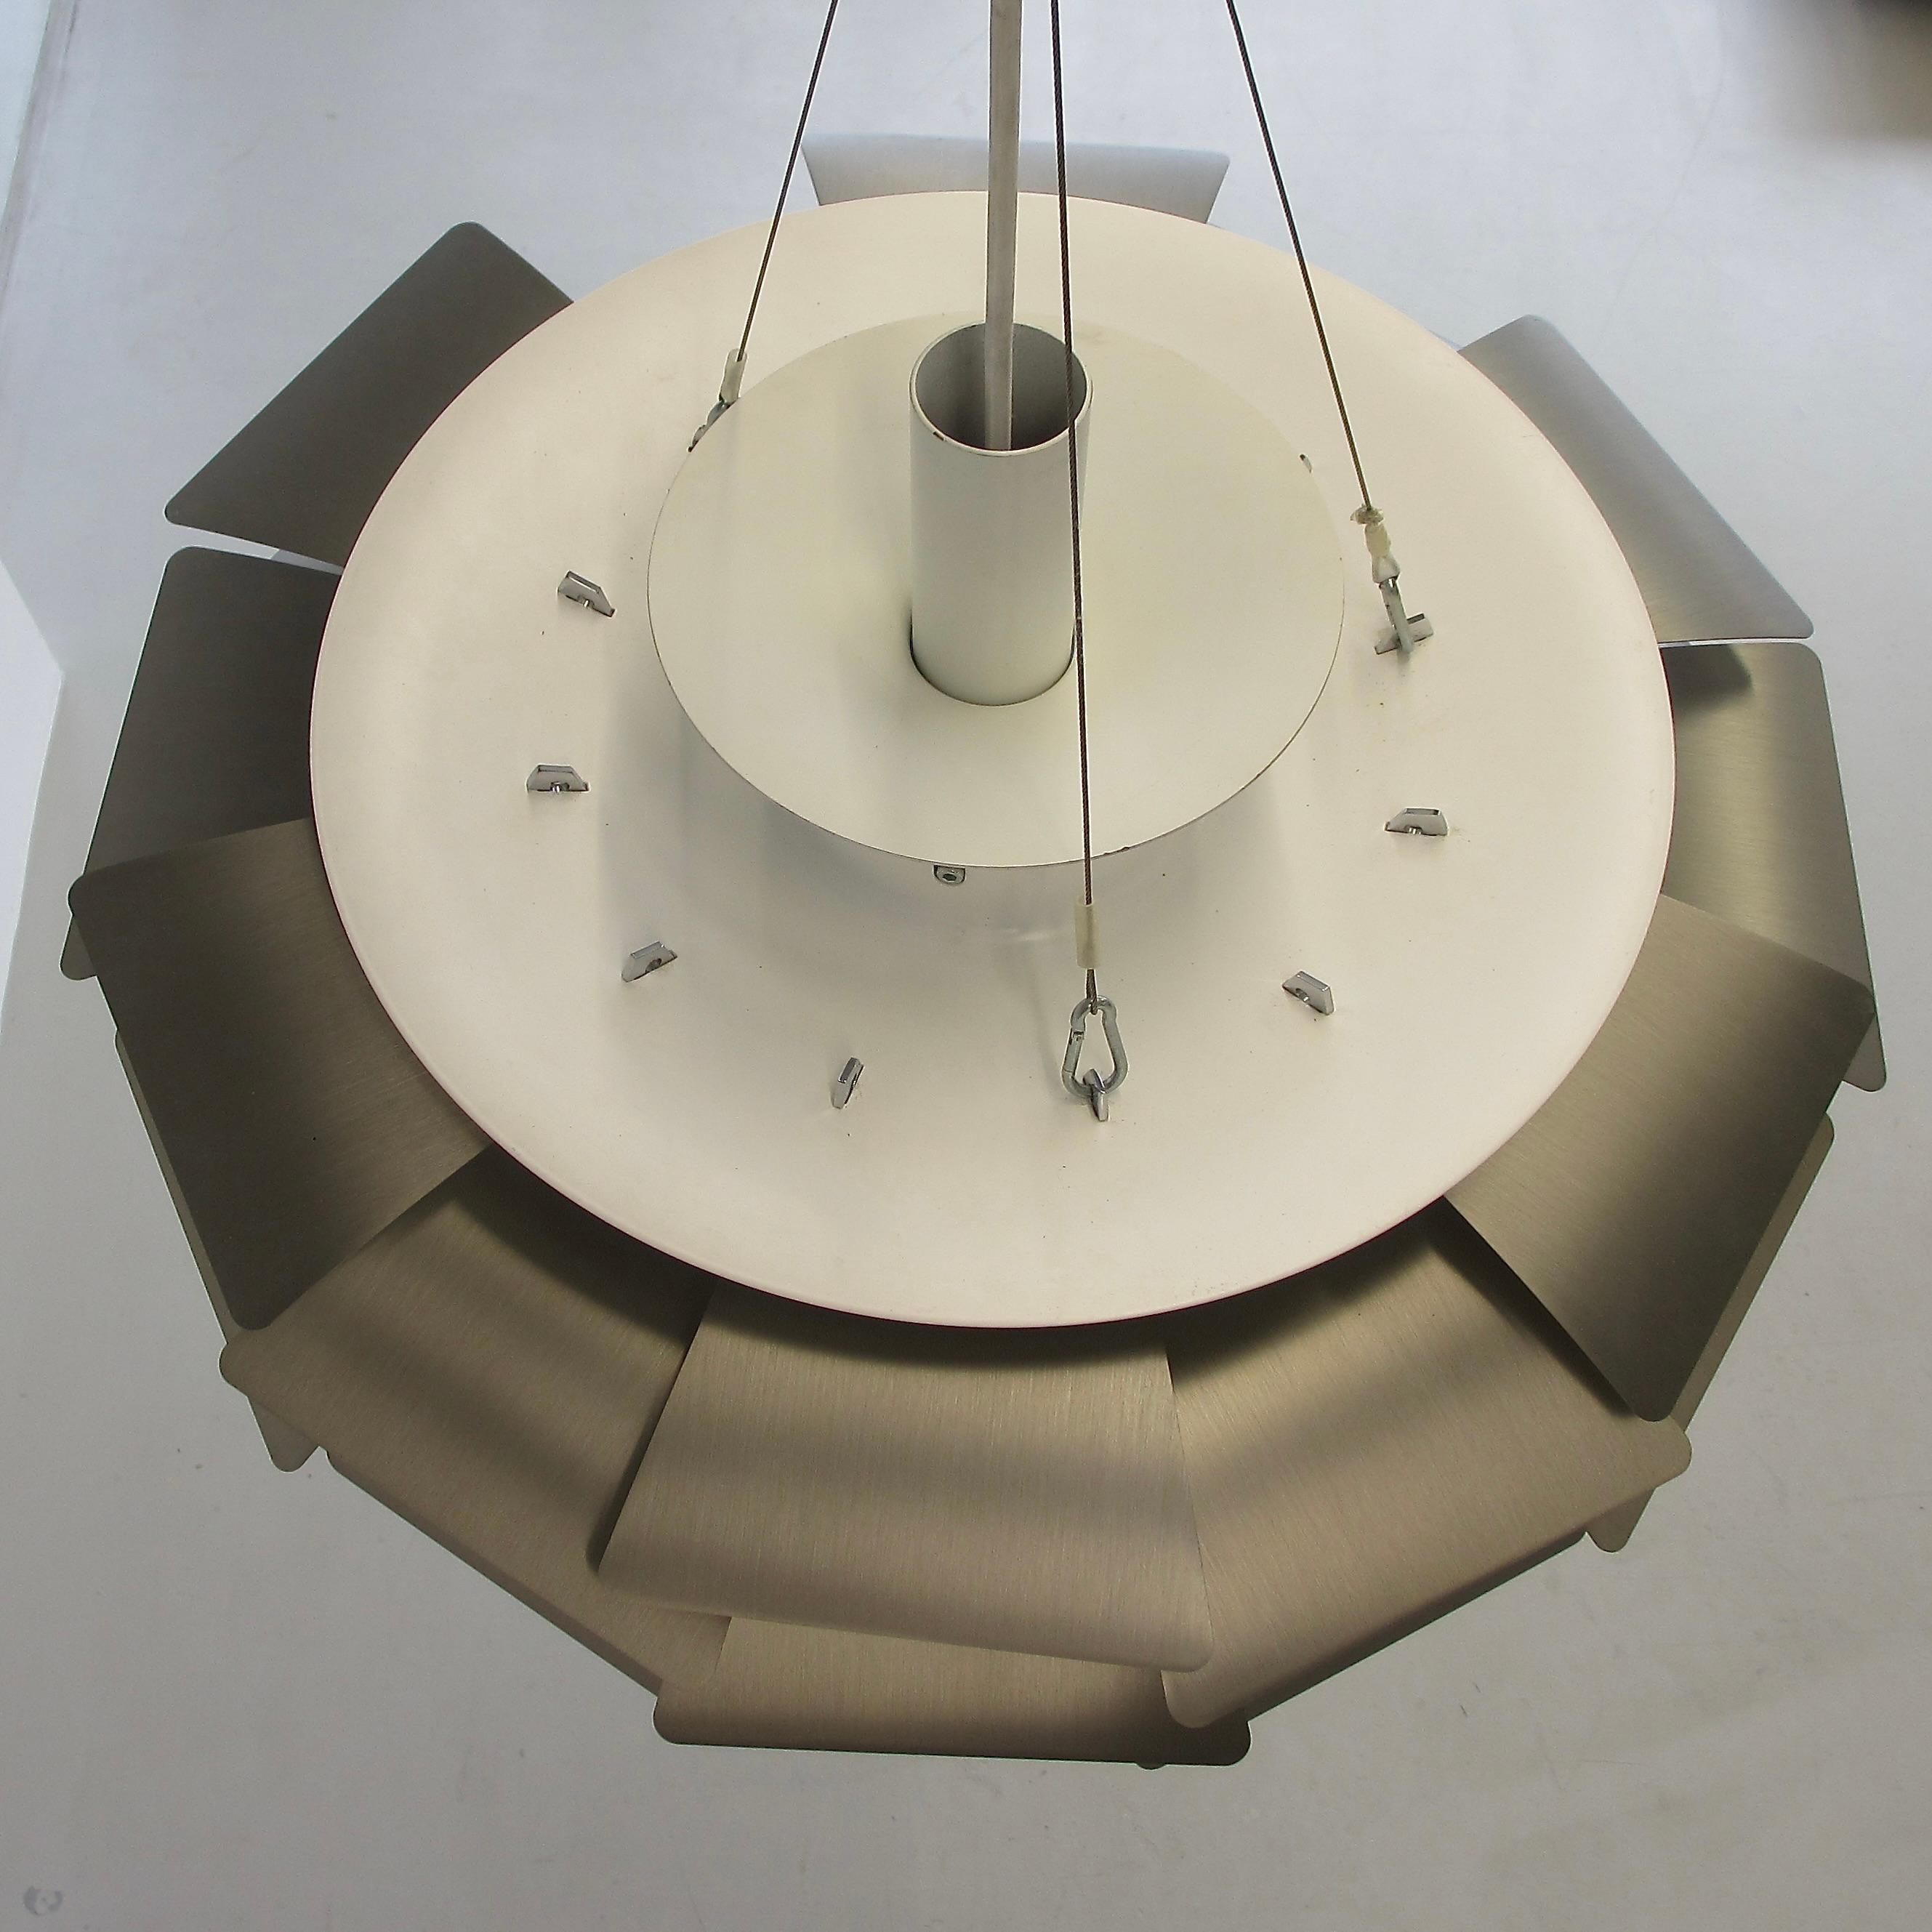 Danish Pendant Lamp Designed by Poul Henningsen. Denmark, Louis Poulsen, 2012